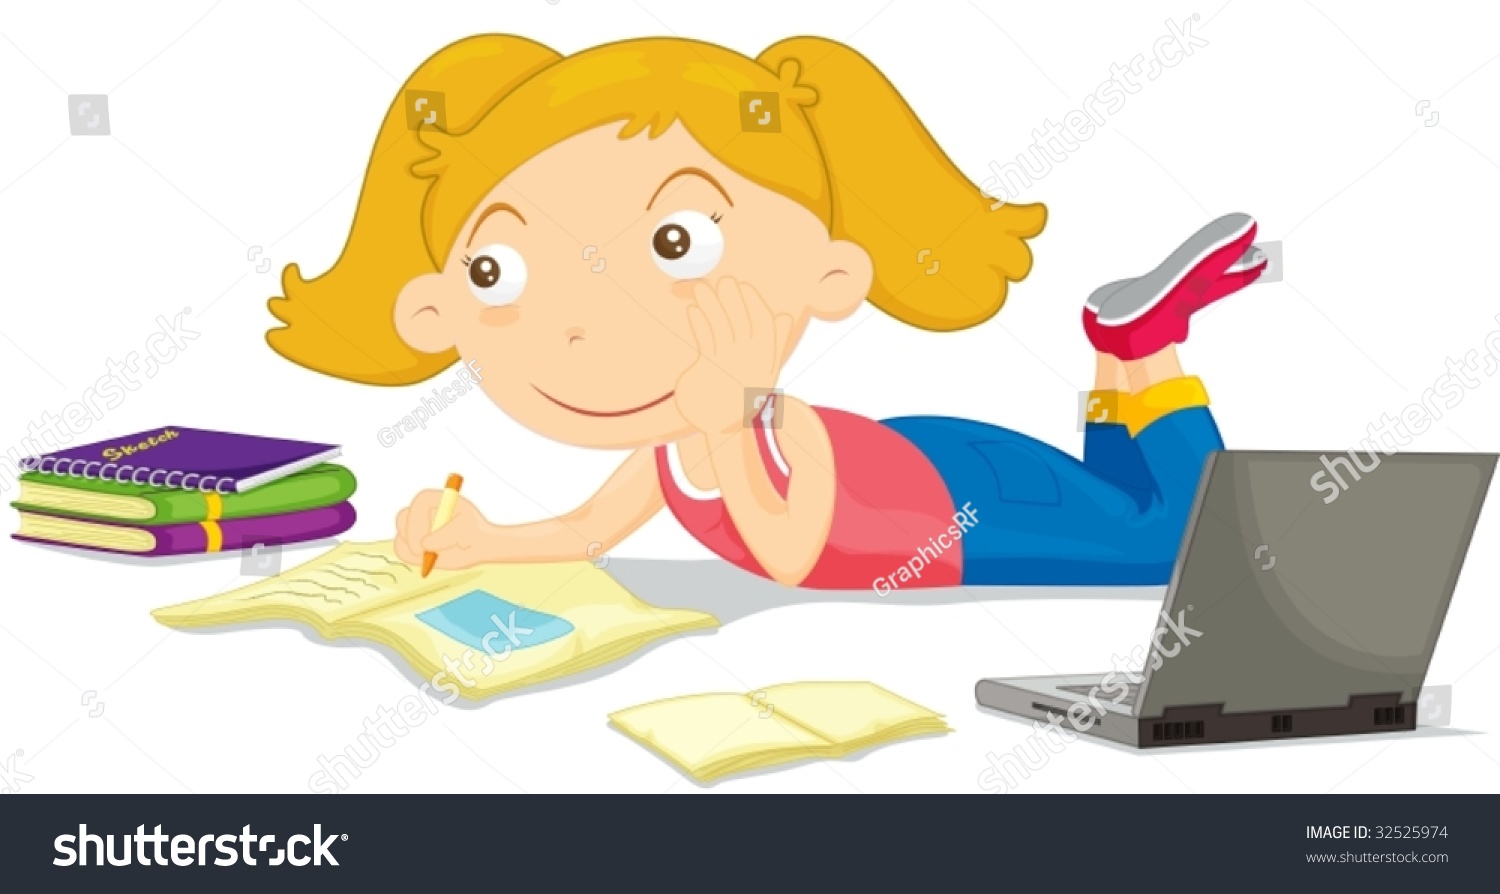 Child doing homework clipart